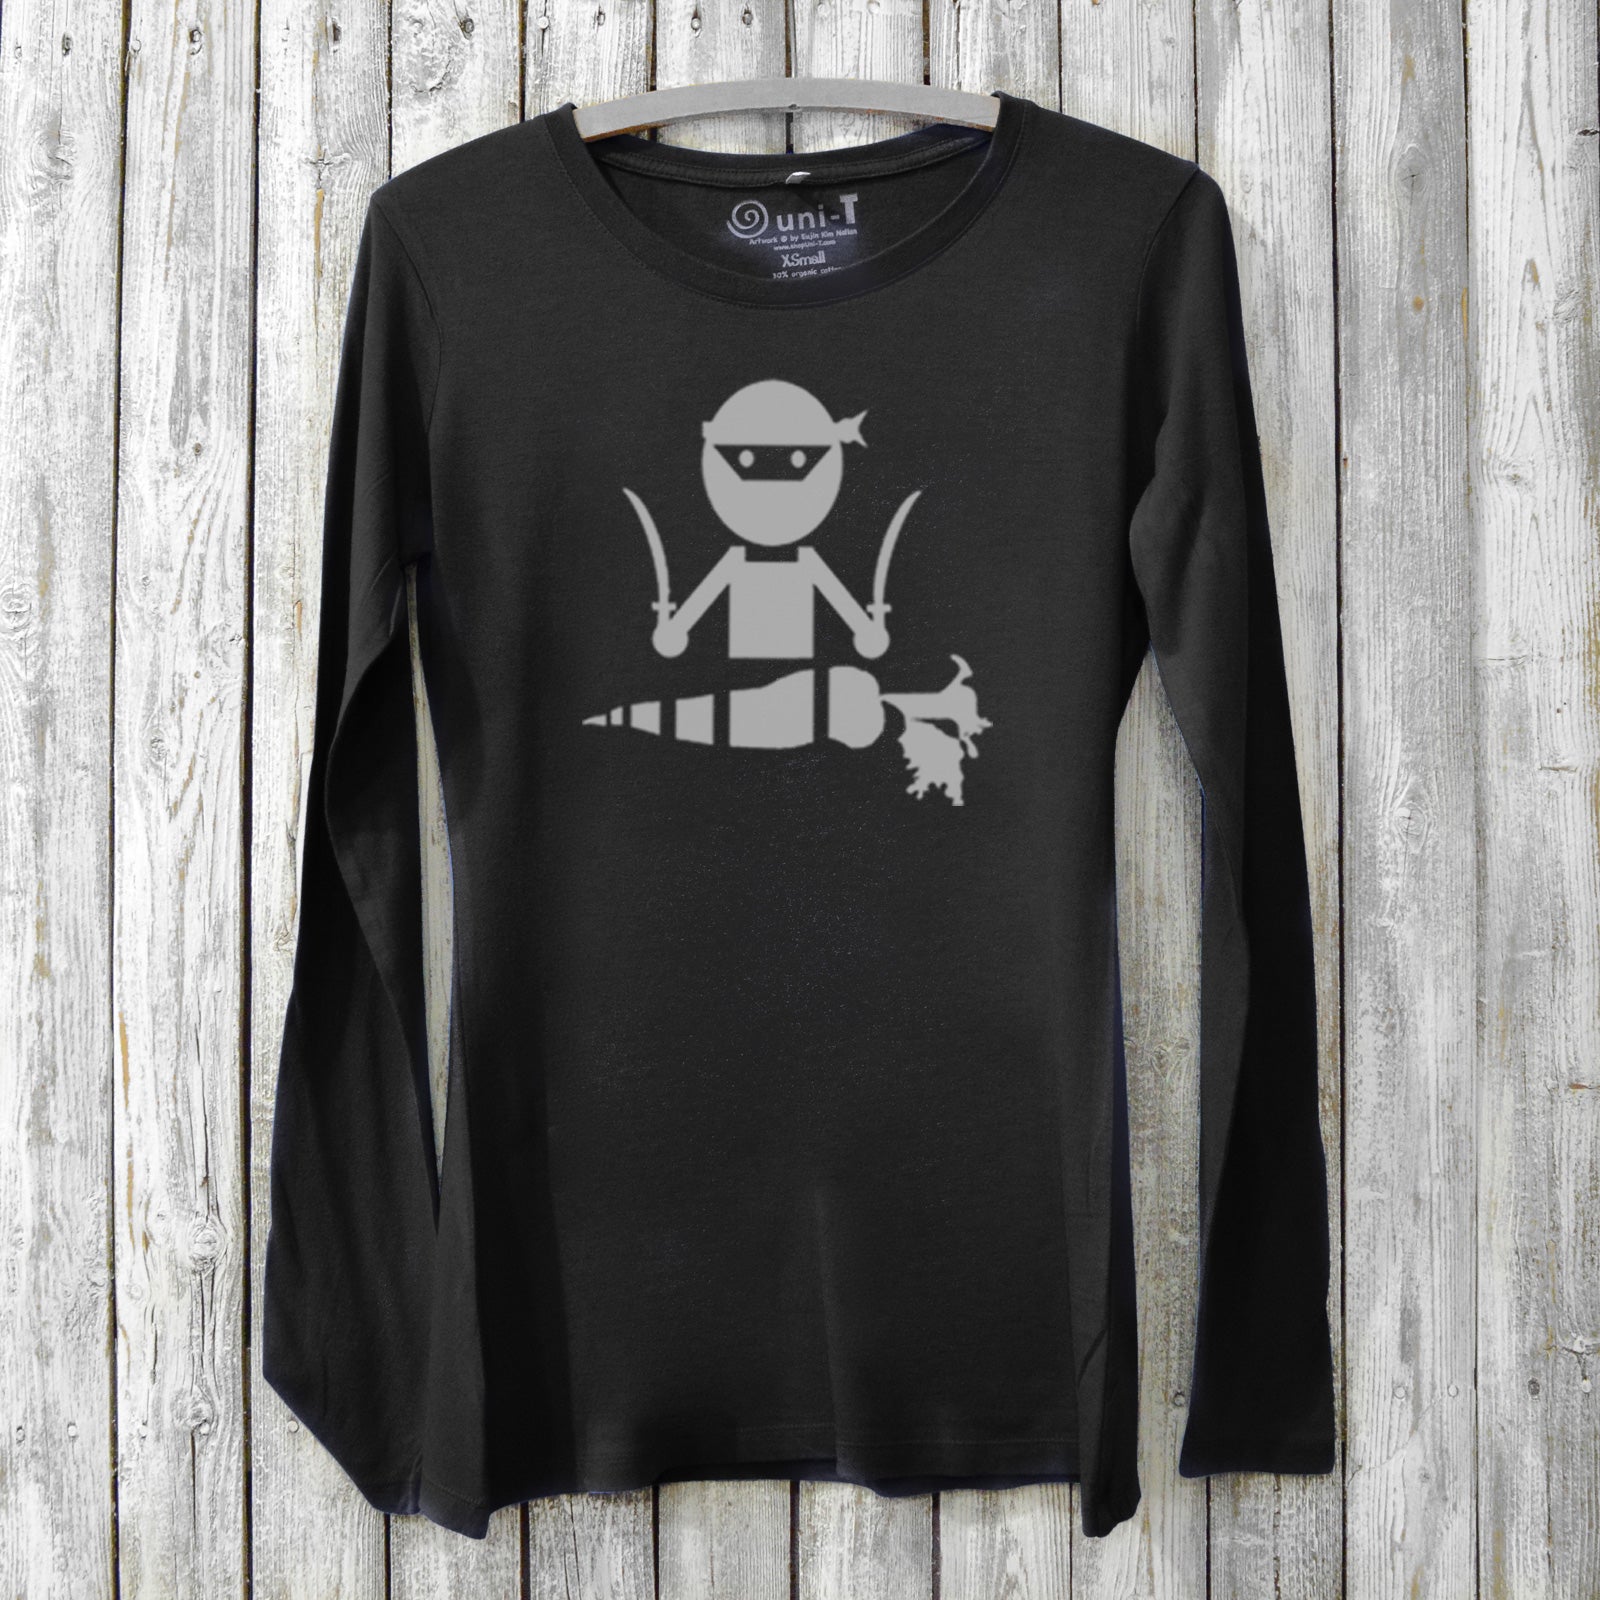 Veggie Ninja Long Sleeve T-shirt for Women Uni-T